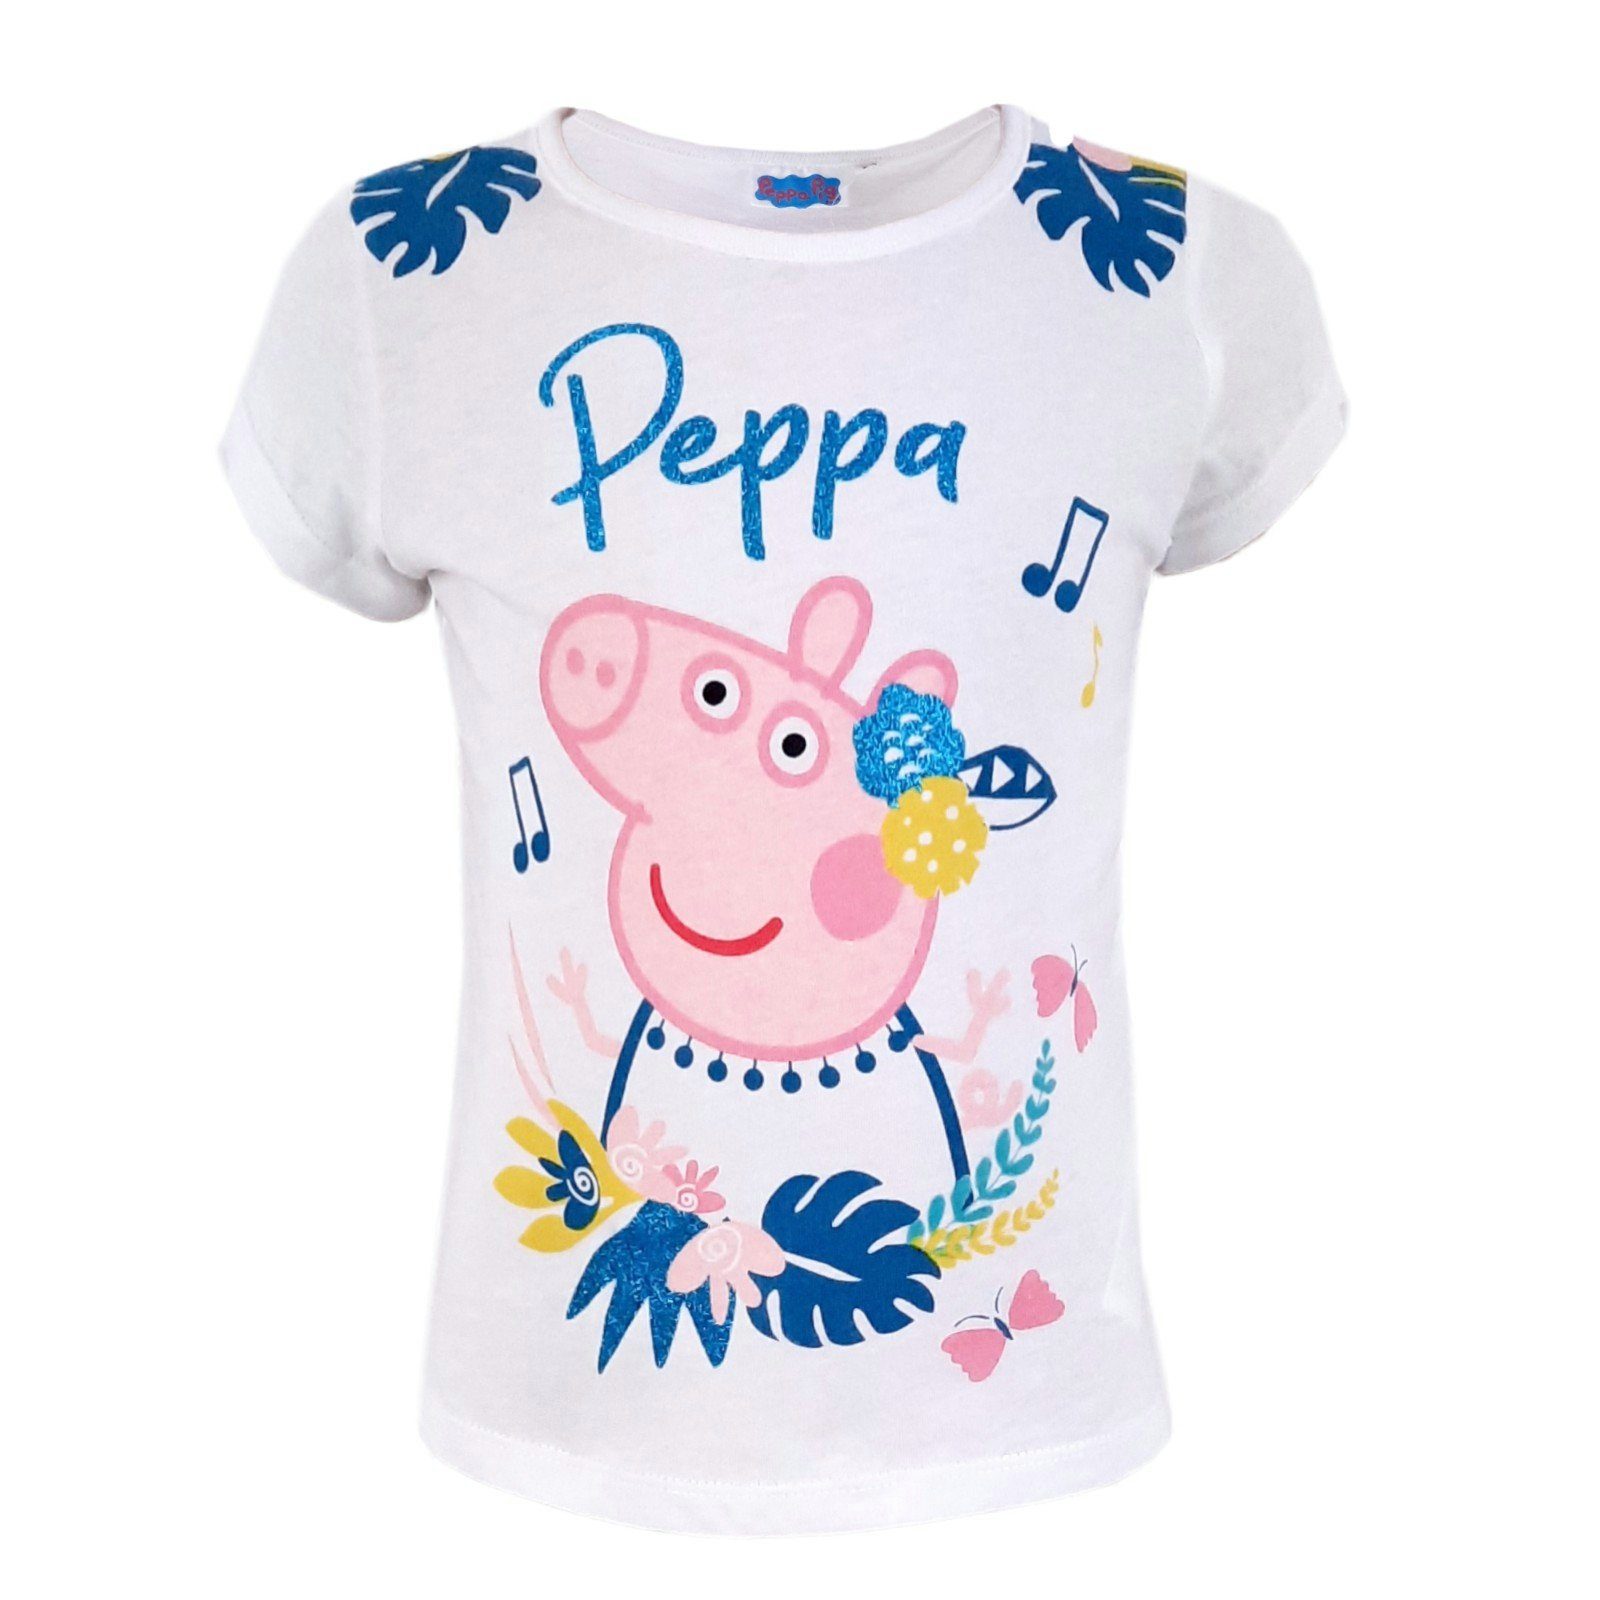 Peppa Pig T-Shirt Peppa Wutz Holyday Mädchen kurzarm Shirt 100% Baumwolle, in Pink oder Weiß